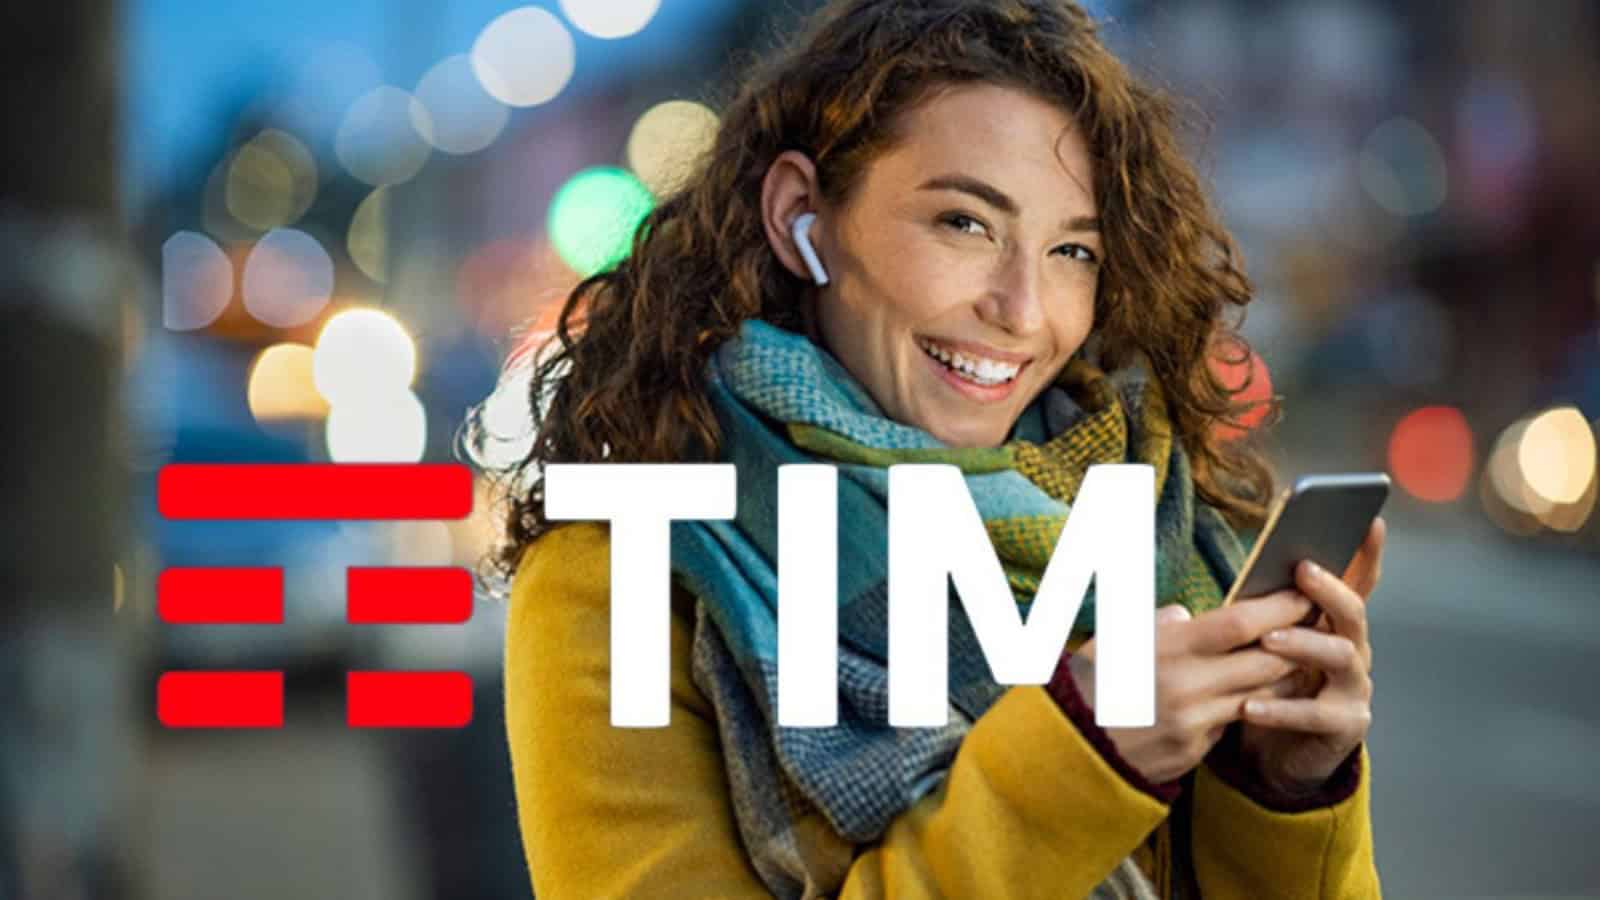 TIM rinnova a giugno le Power: come ottenere 300 GB al mese in 5G gratis